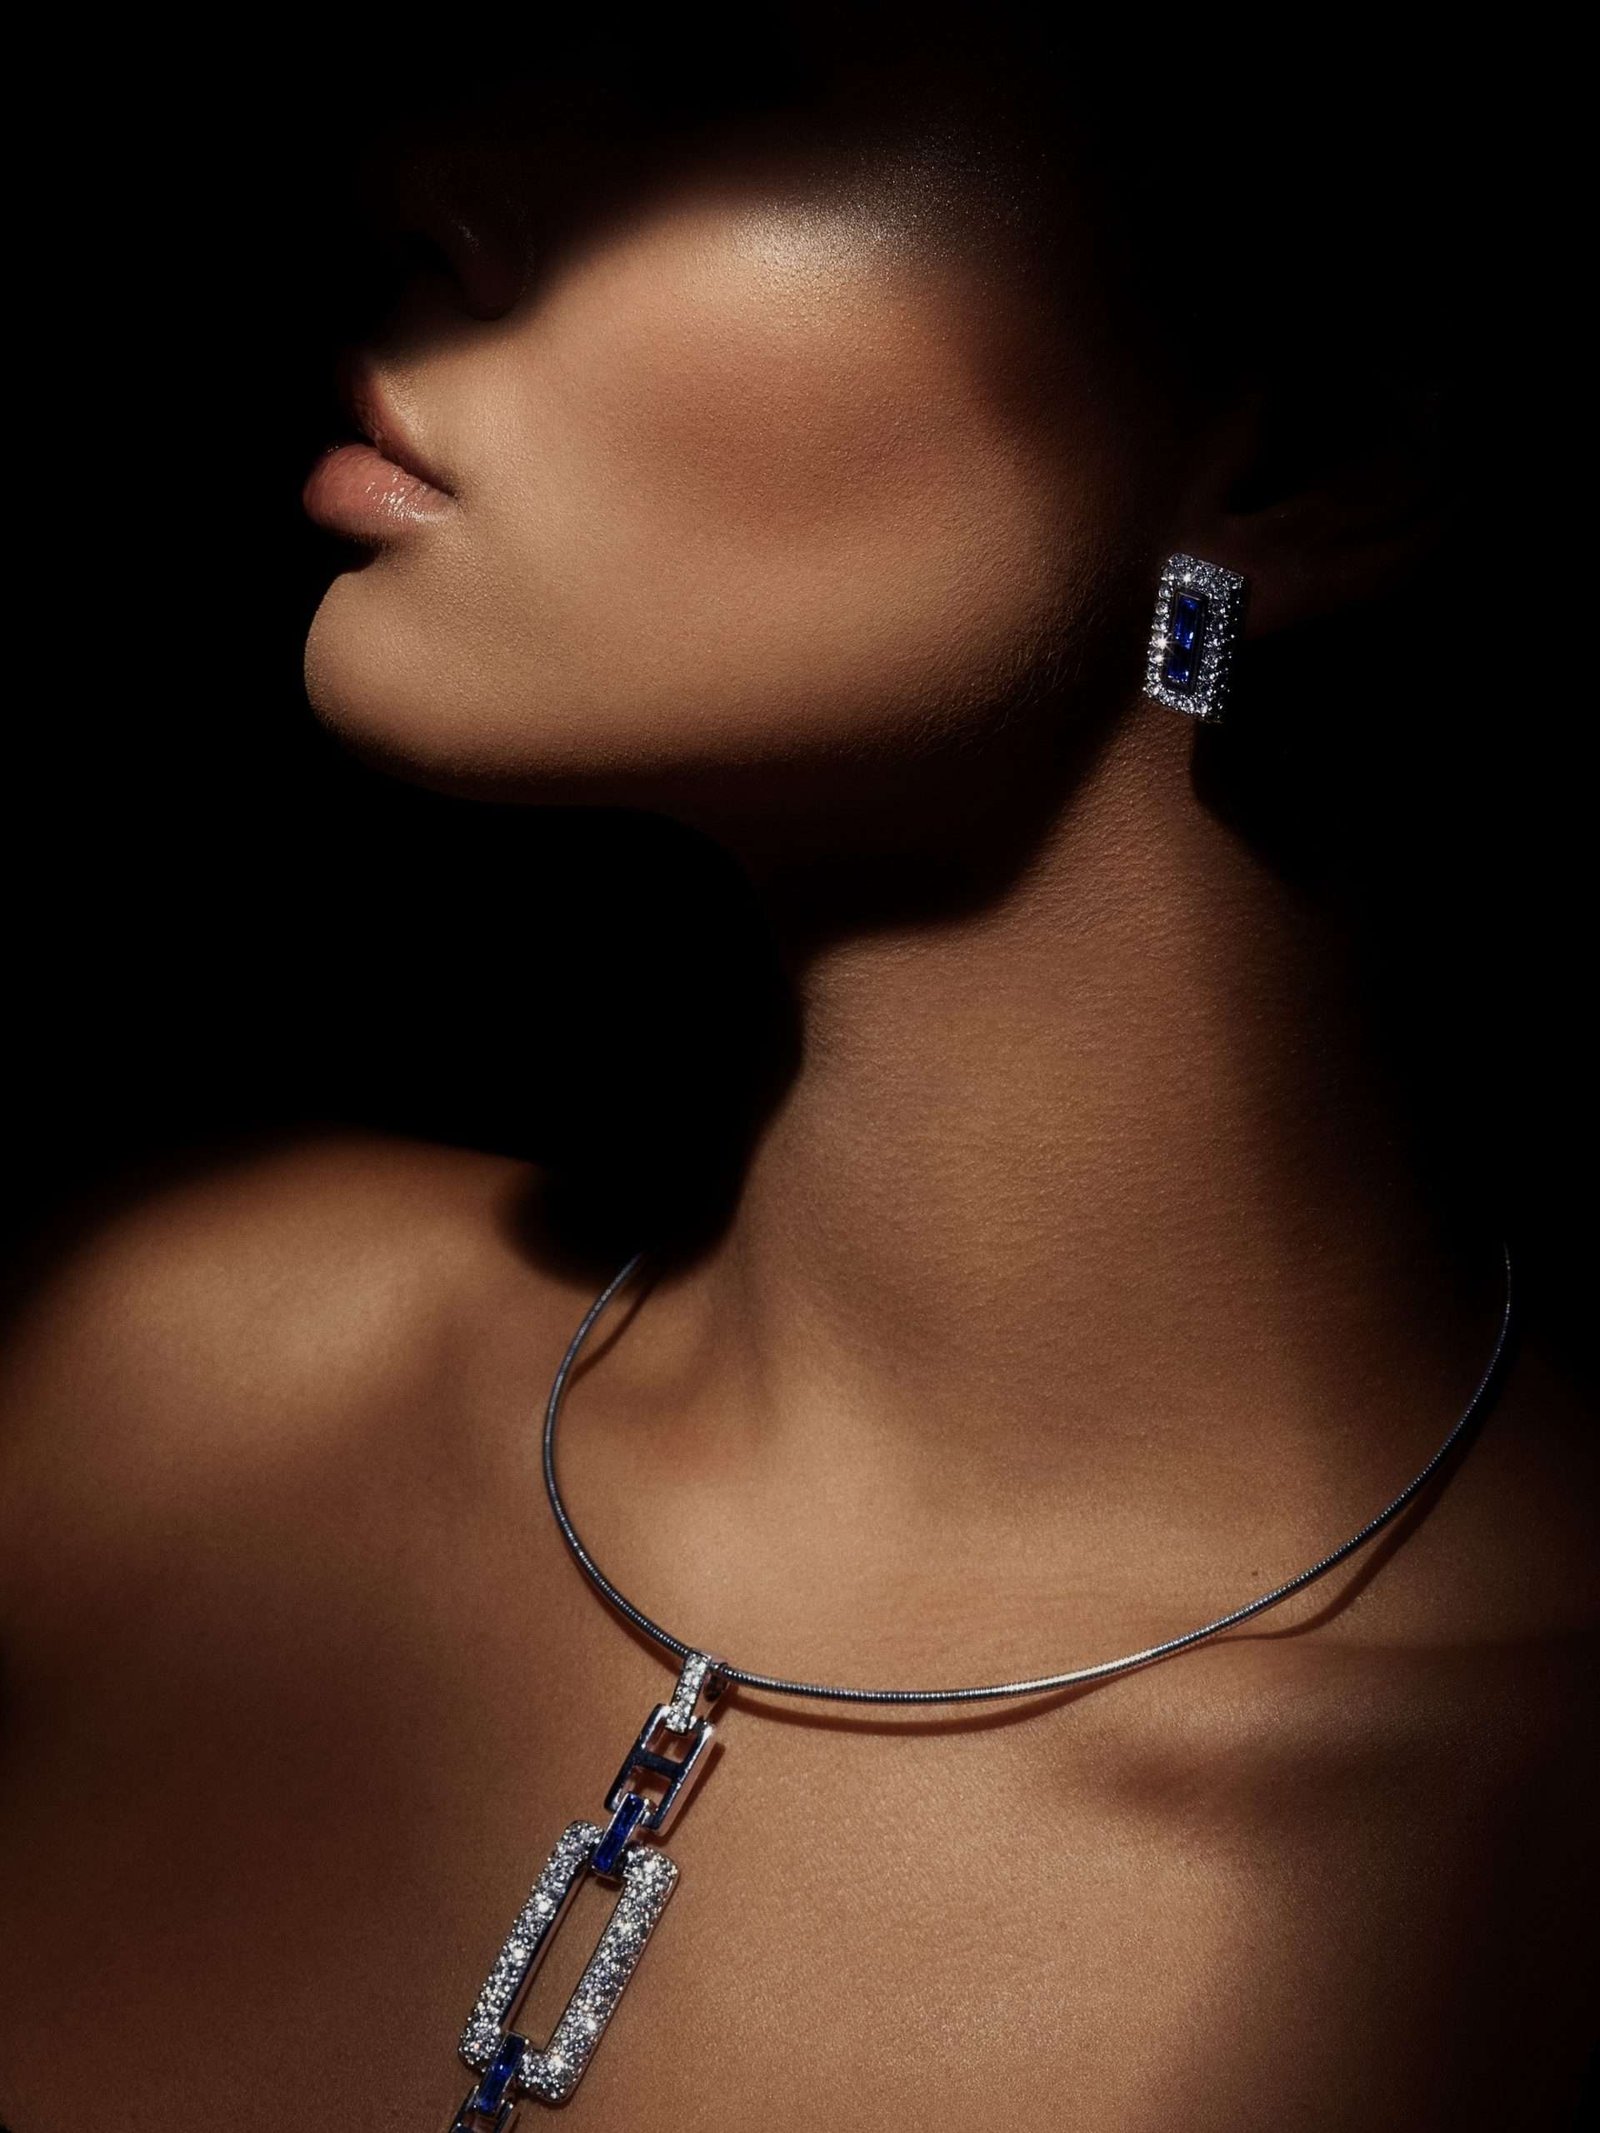 woman in shadow wearing luxury diamond jewelry